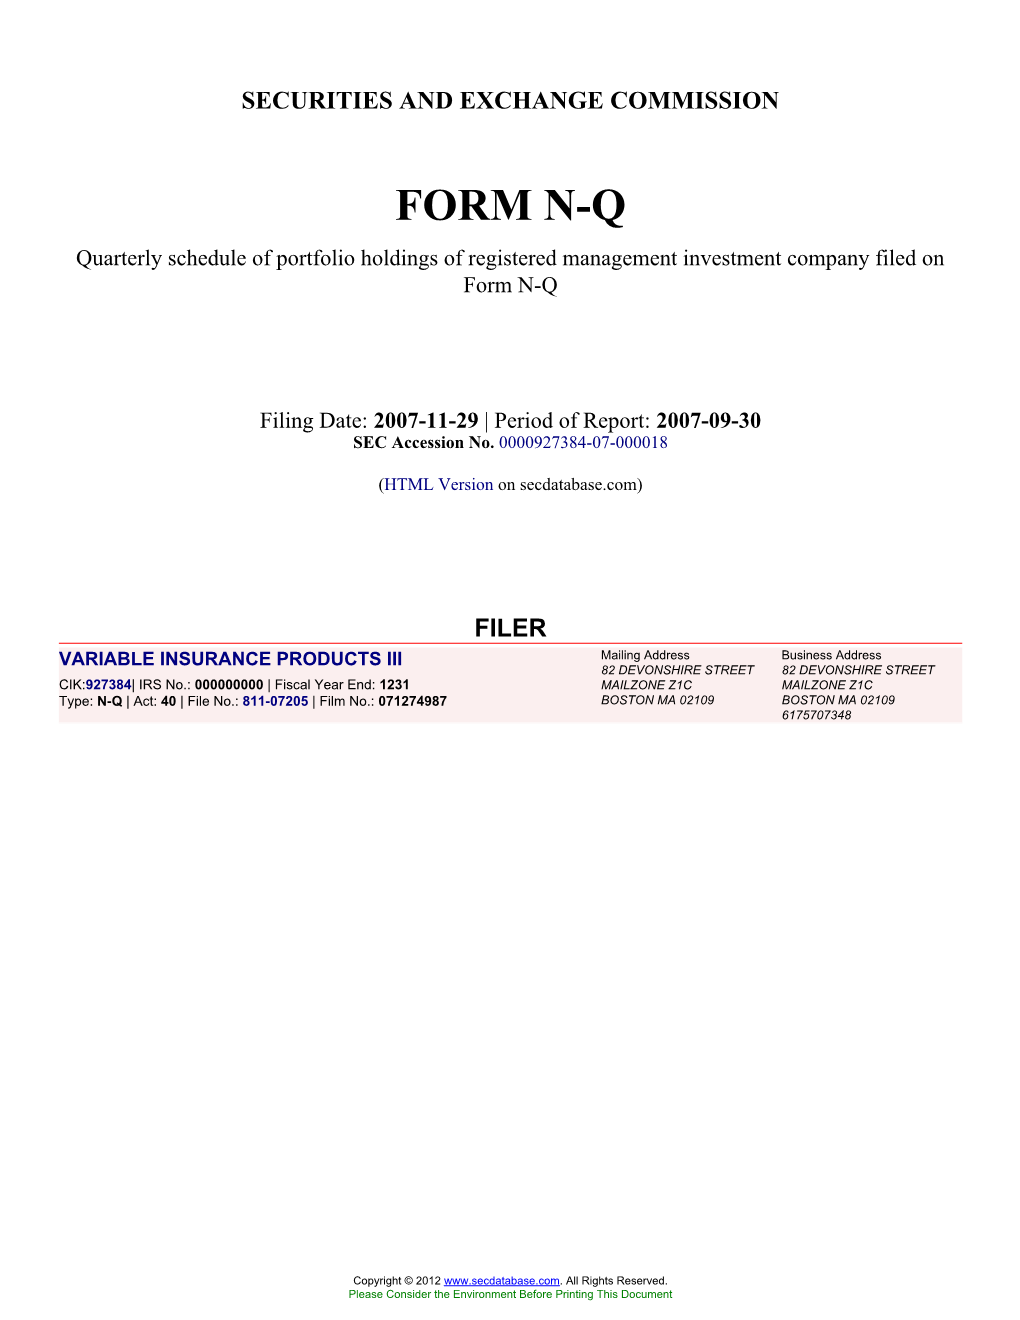 Form: NQ, Filing Date: 11/29/2007